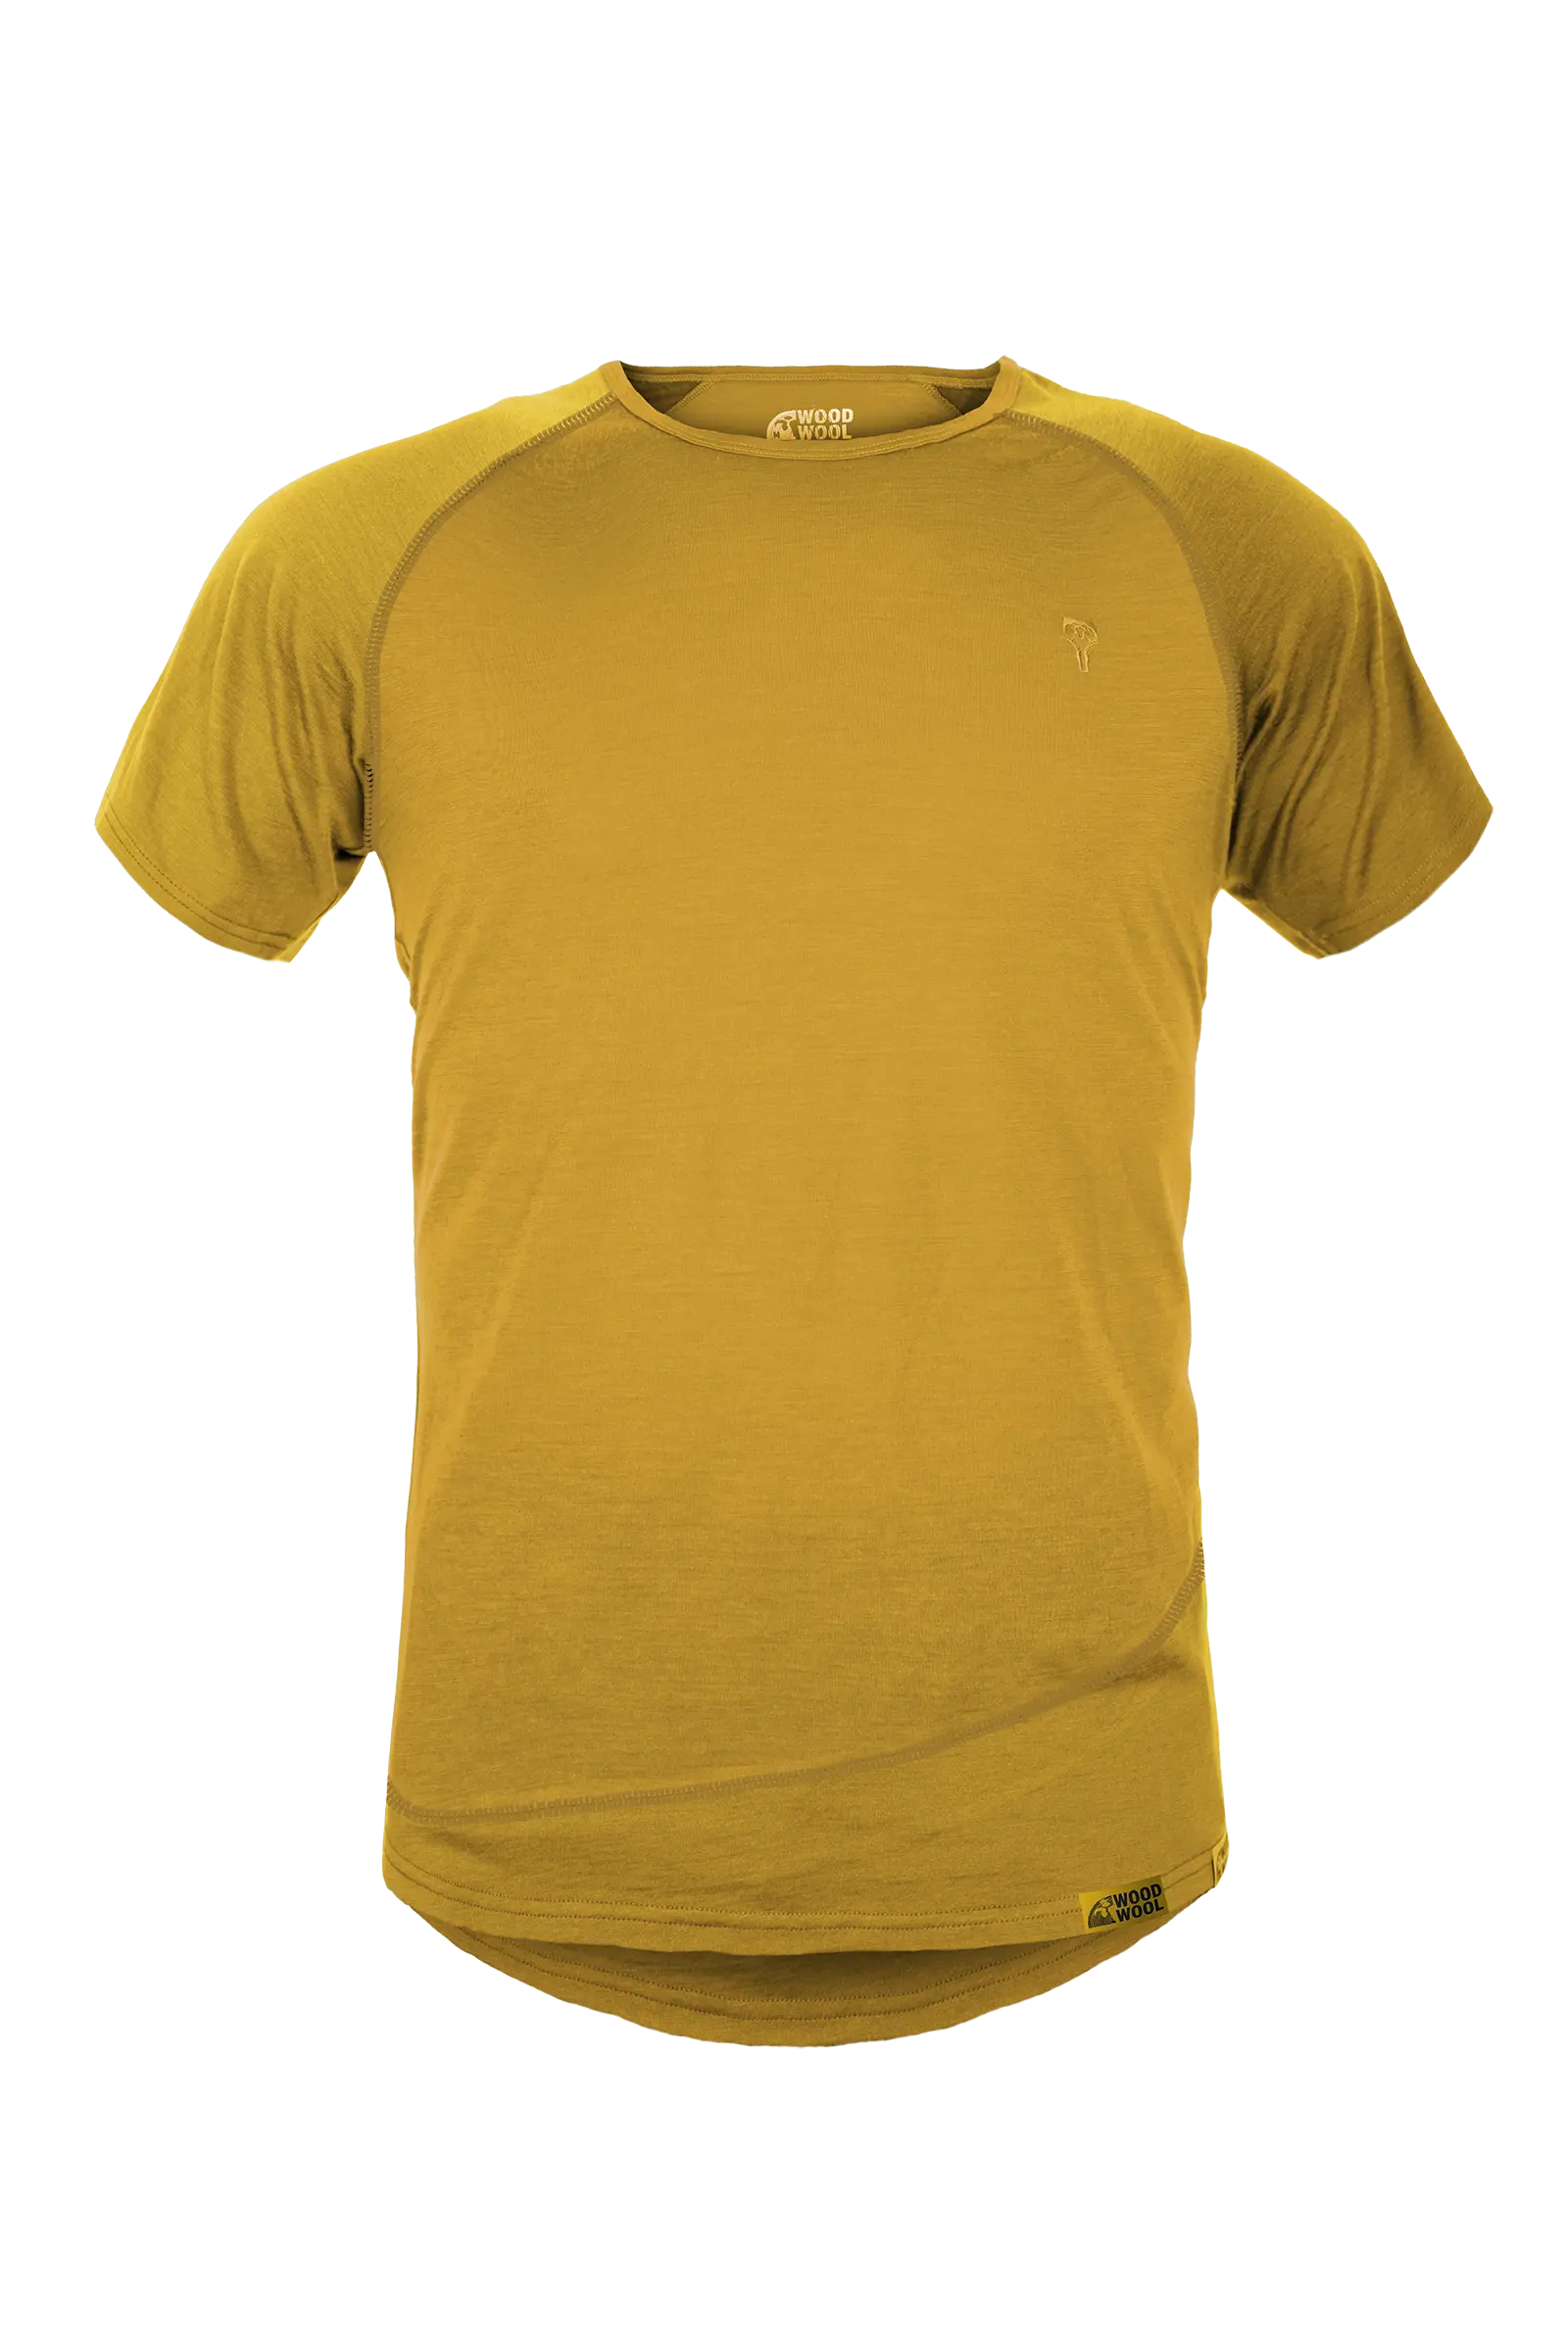 gruezi-bag-woodwool-t-shirt-mr-pike-2750-2754-daisy-daze-yellow-amainfrei Kopie